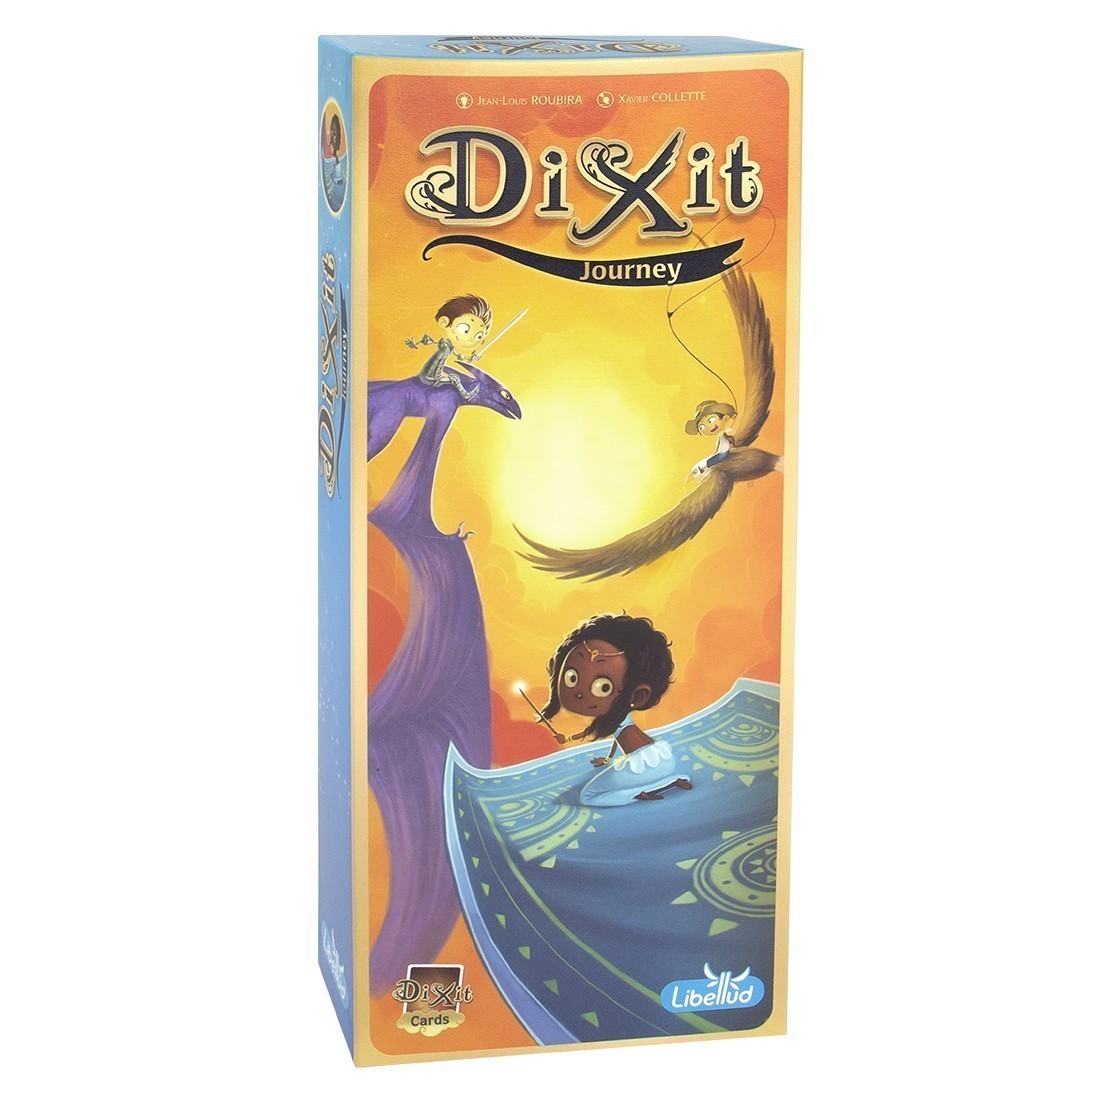 Настільна гра Діксіт 3: Подорож (Dixit 3: Journey), бренду Ігромаг, для 3-8 гравців, час гри < 30хв. - KUBIX